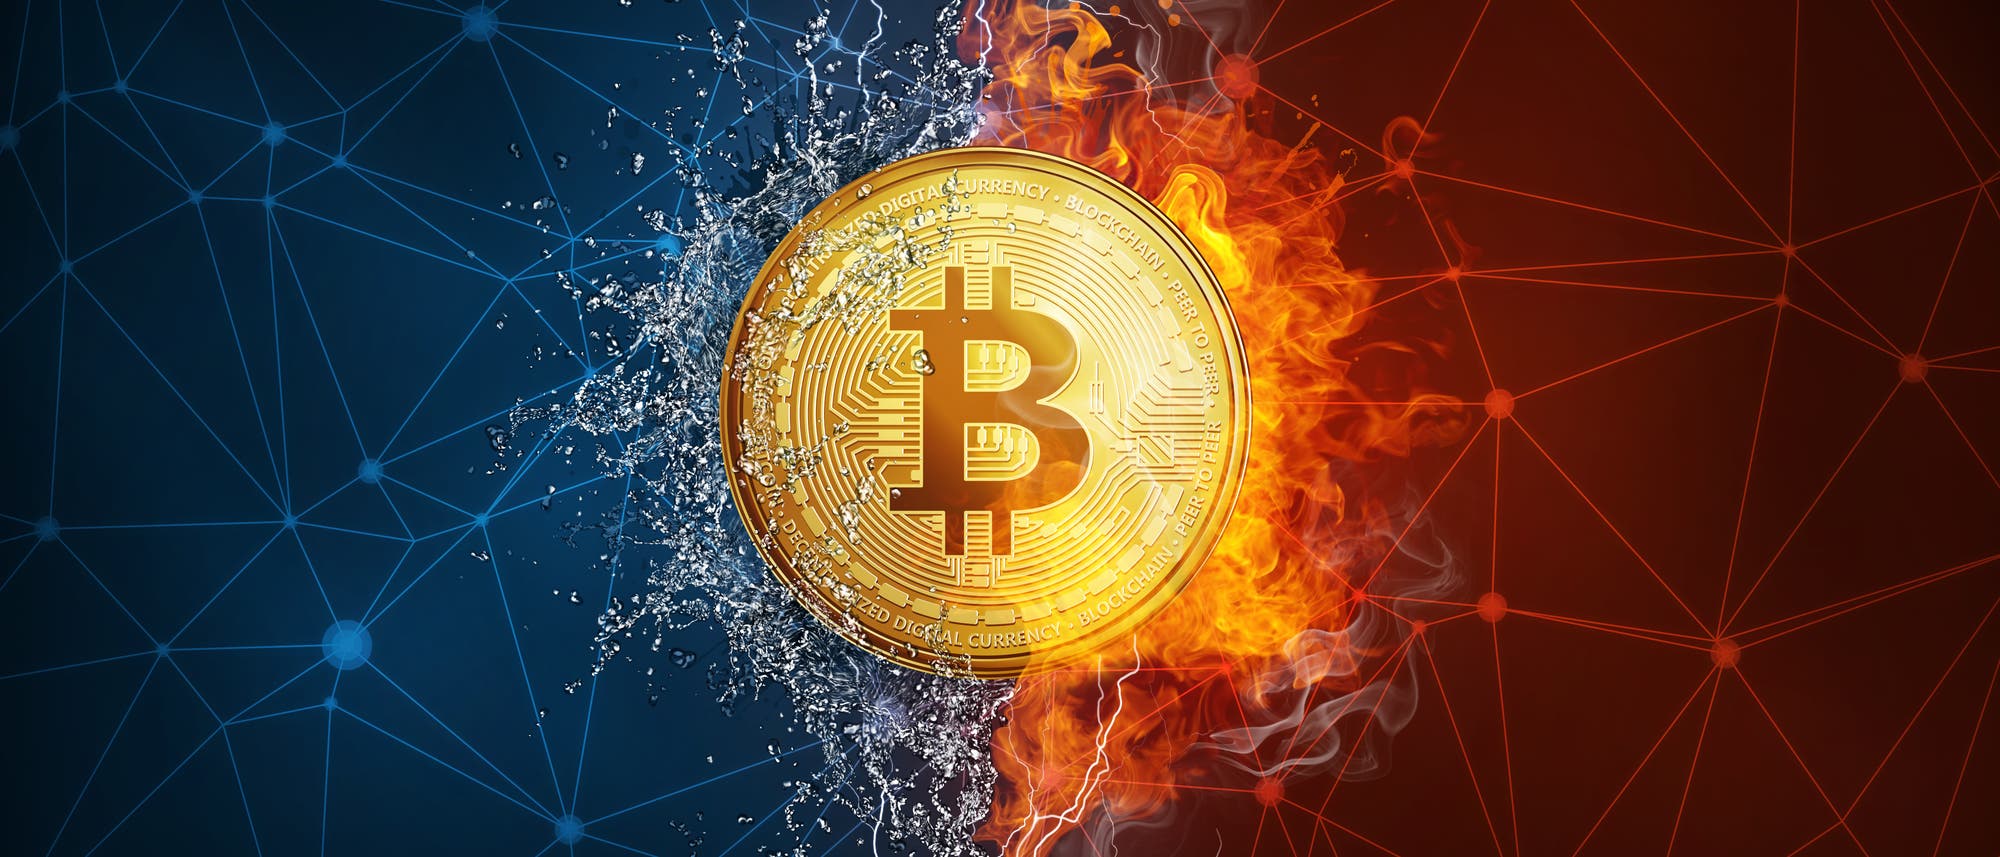 Goldenes Bitcoin-Zeichen, links blauer Hintergrund, Wasser spritzt hervor, rechts roter Hintergrund, Flammen züngeln hervor.